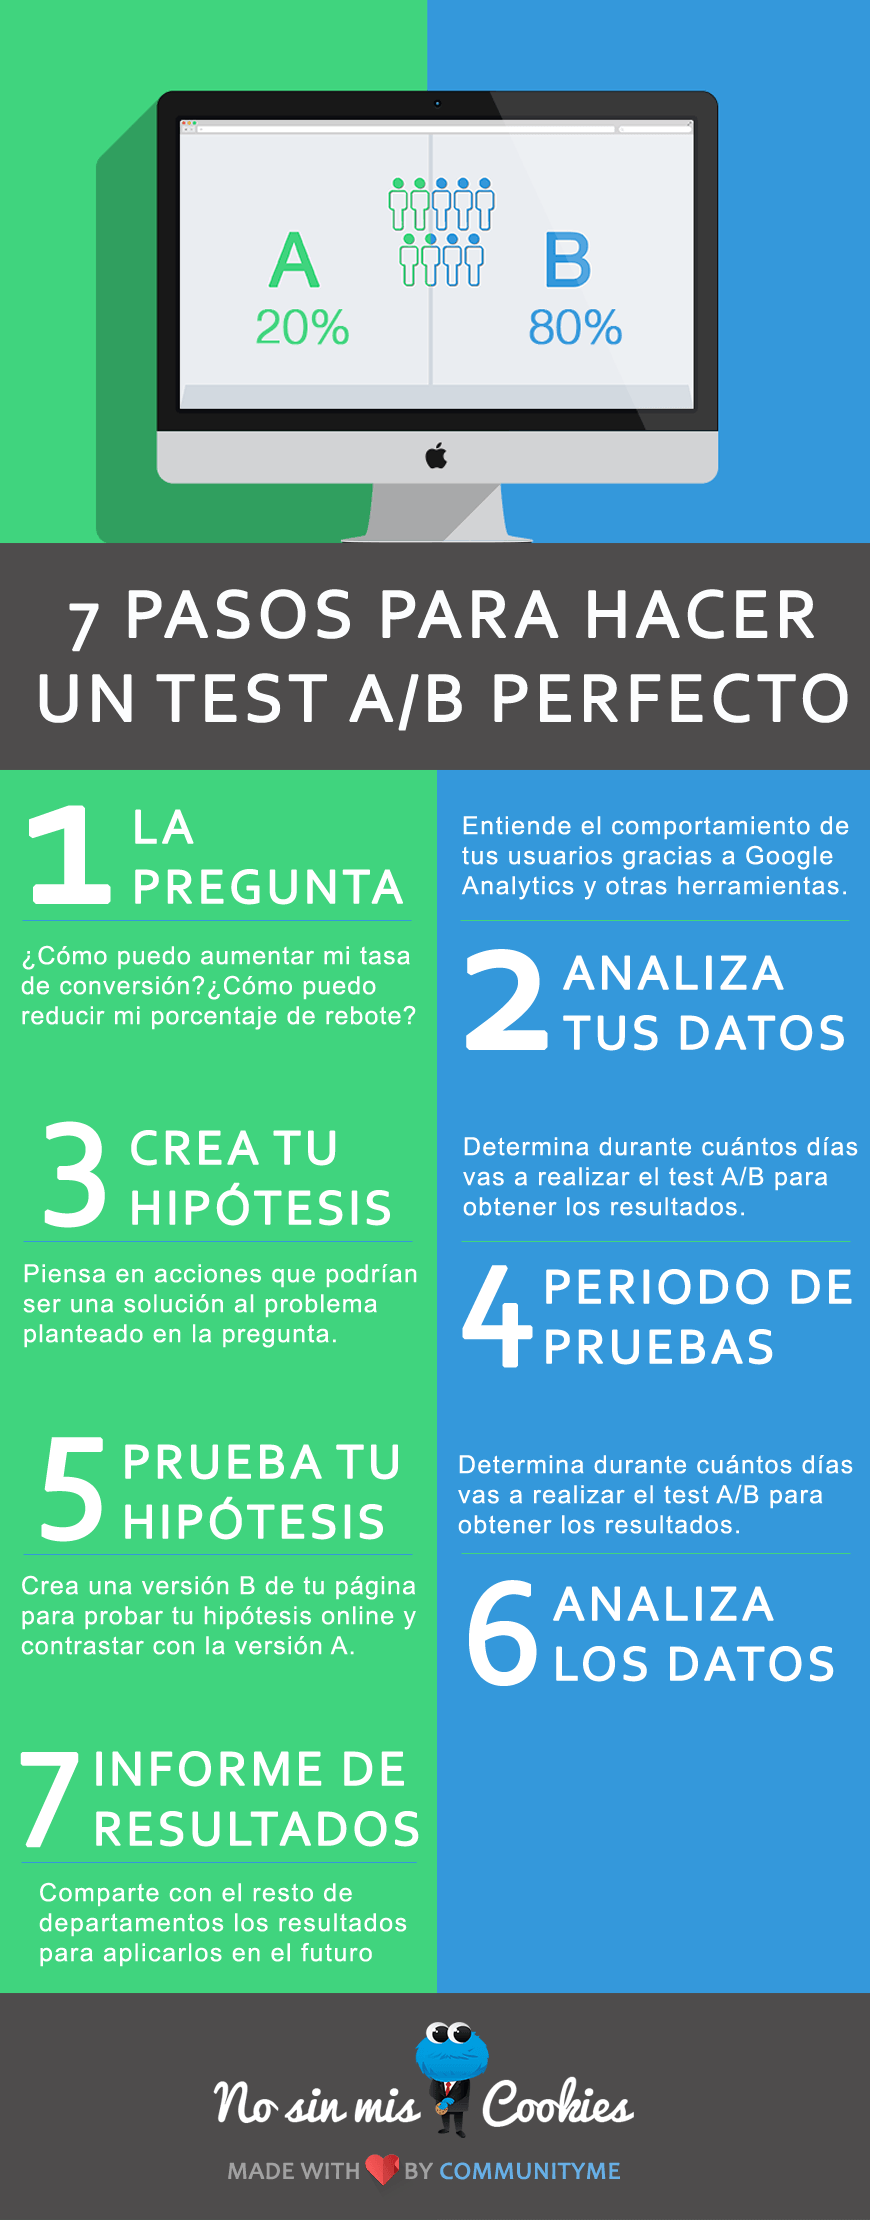 Infografía sobre cómo hacer un test A/B perfecto